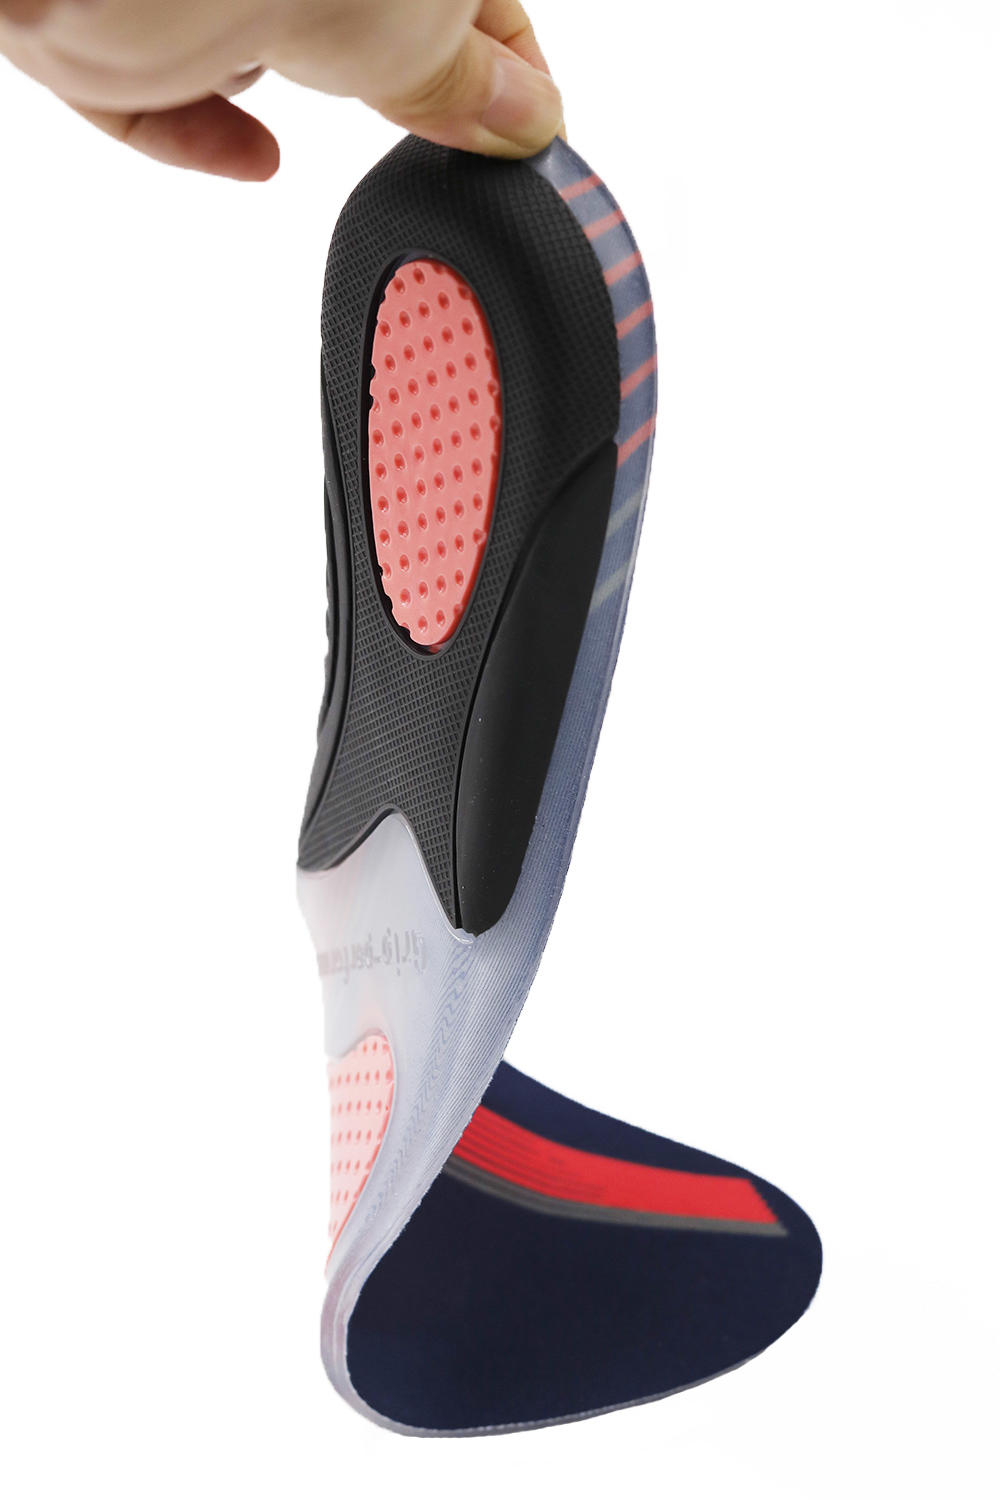 Sport cushioning shoe insole Hotselling custom logo best comfort shock absorbing gel field pain relief